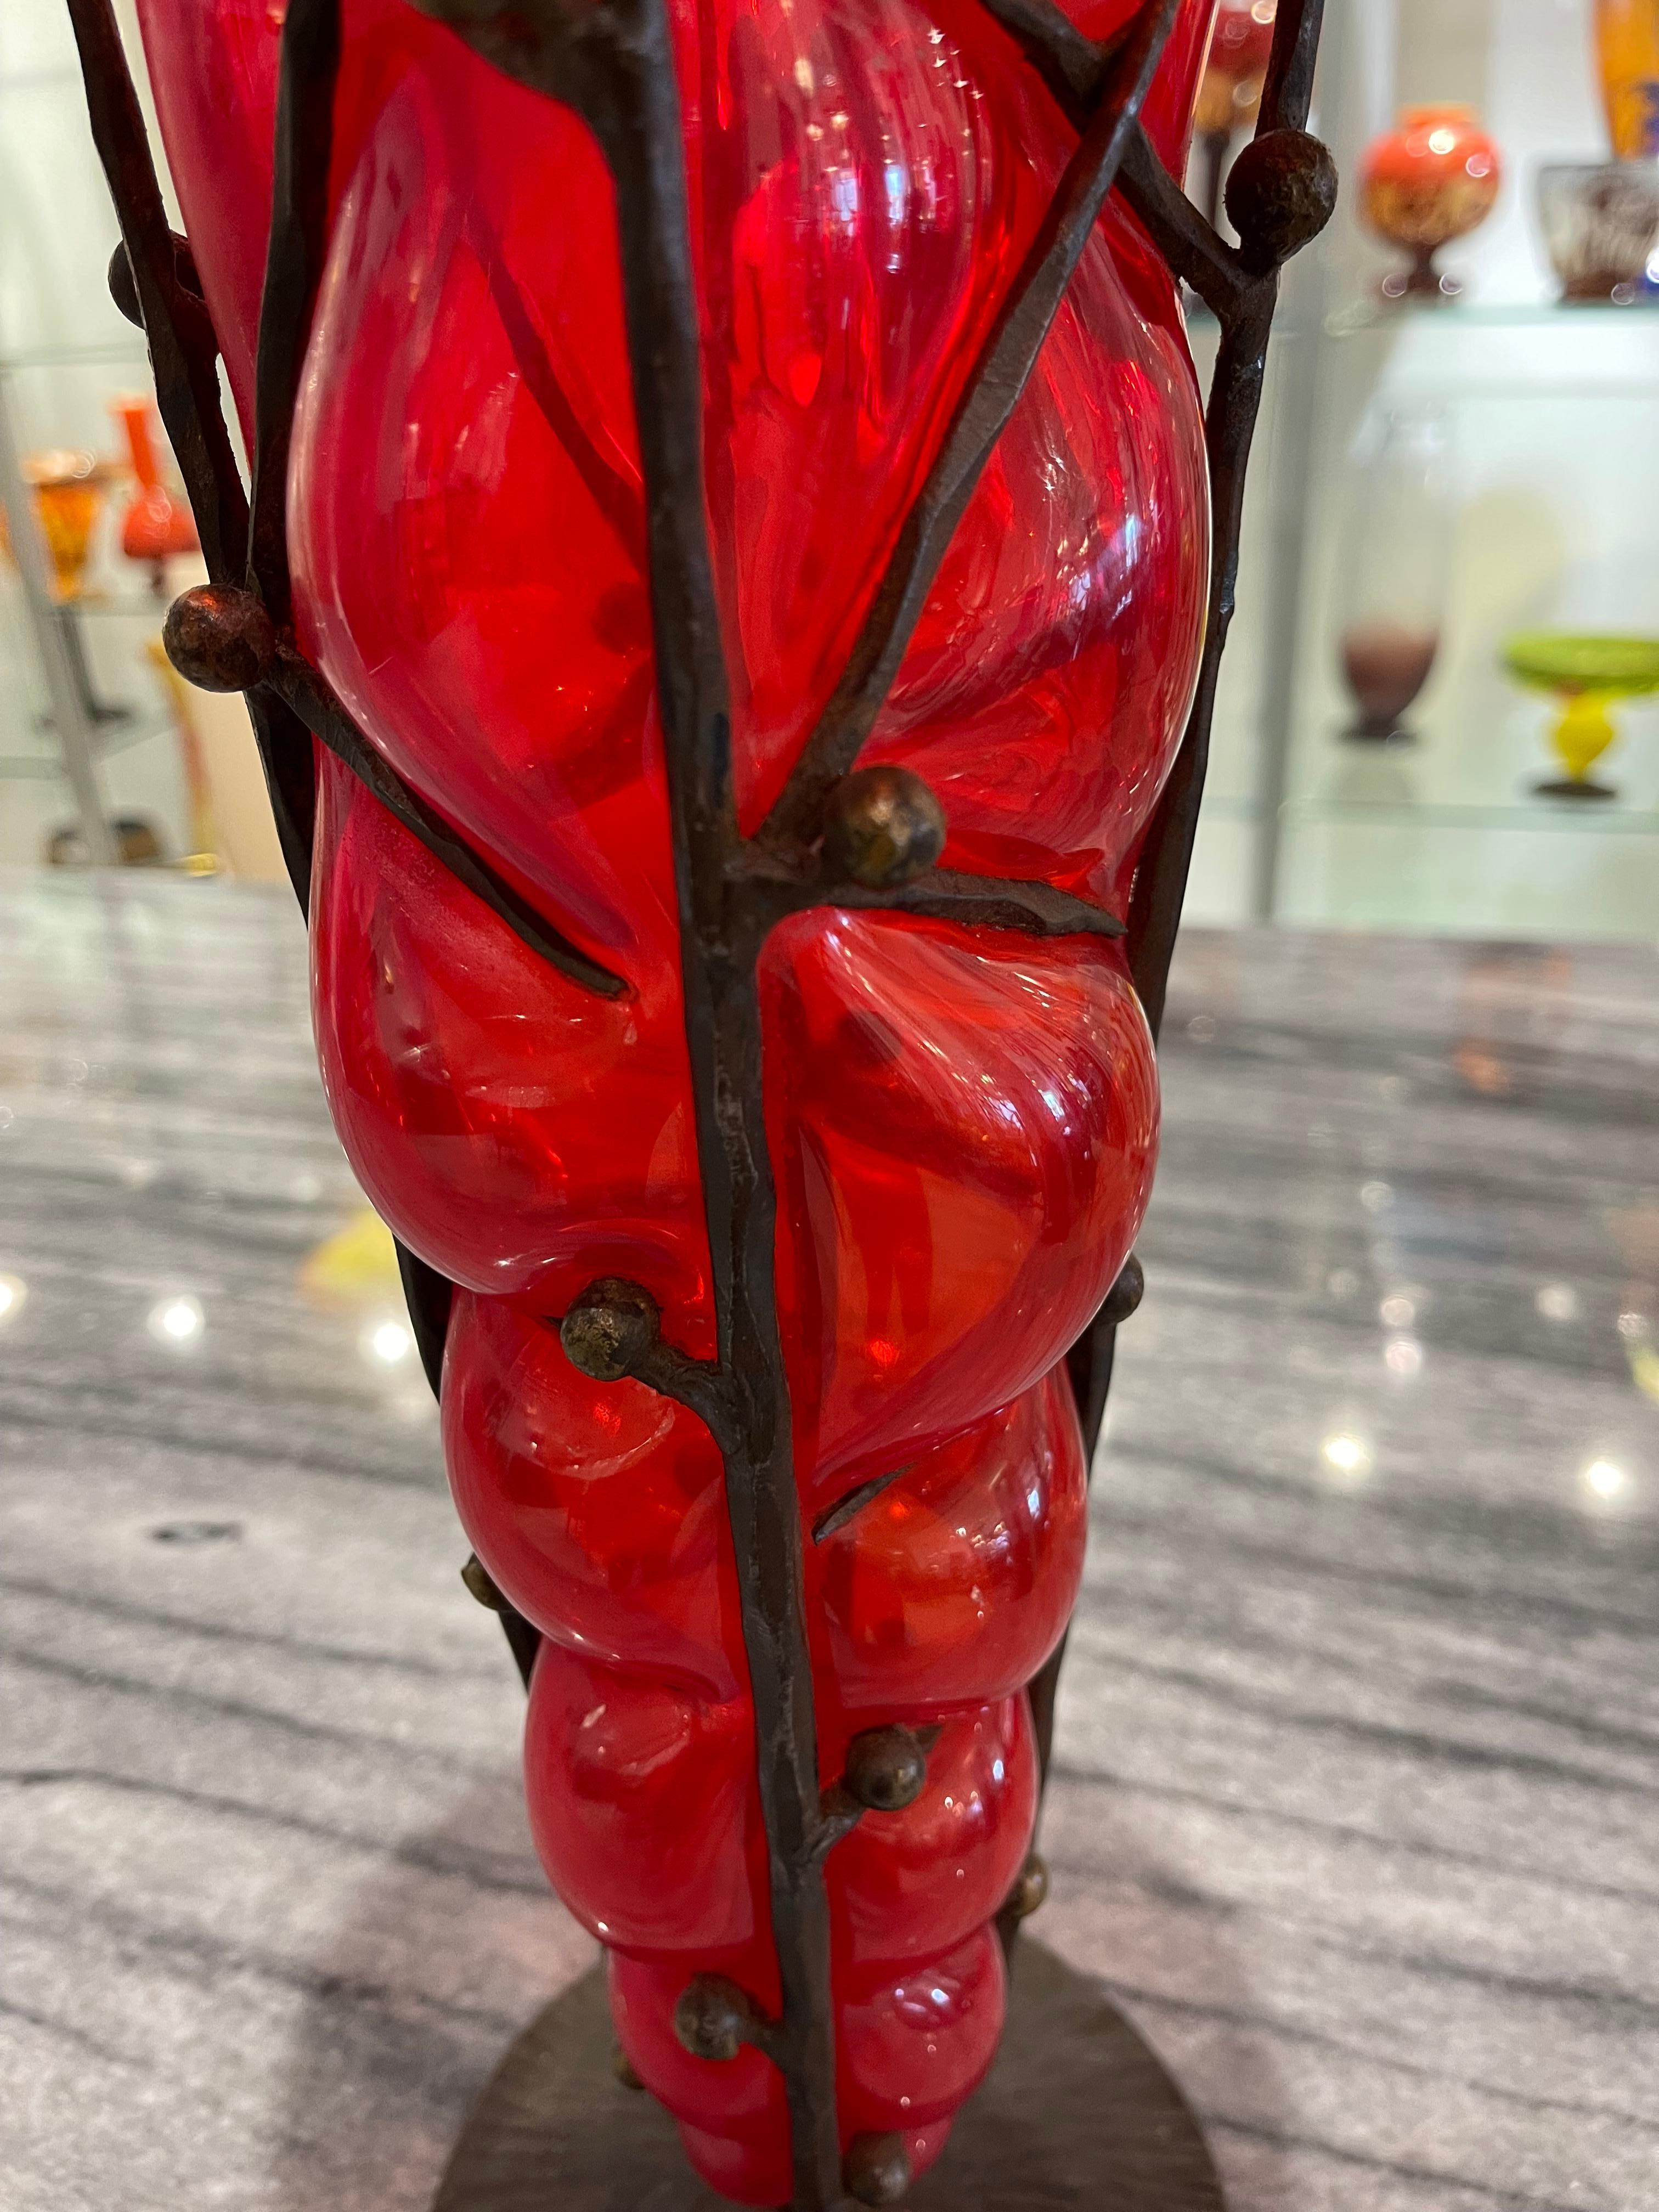 Vase en verre Art déco de Charles Schneider, réalisé selon la technique de la réticulation (verre soufflé dans une armature en fer), de couleur rouge profond.
Fabriqué en France
Circa : 1920
Signature : Schneider.